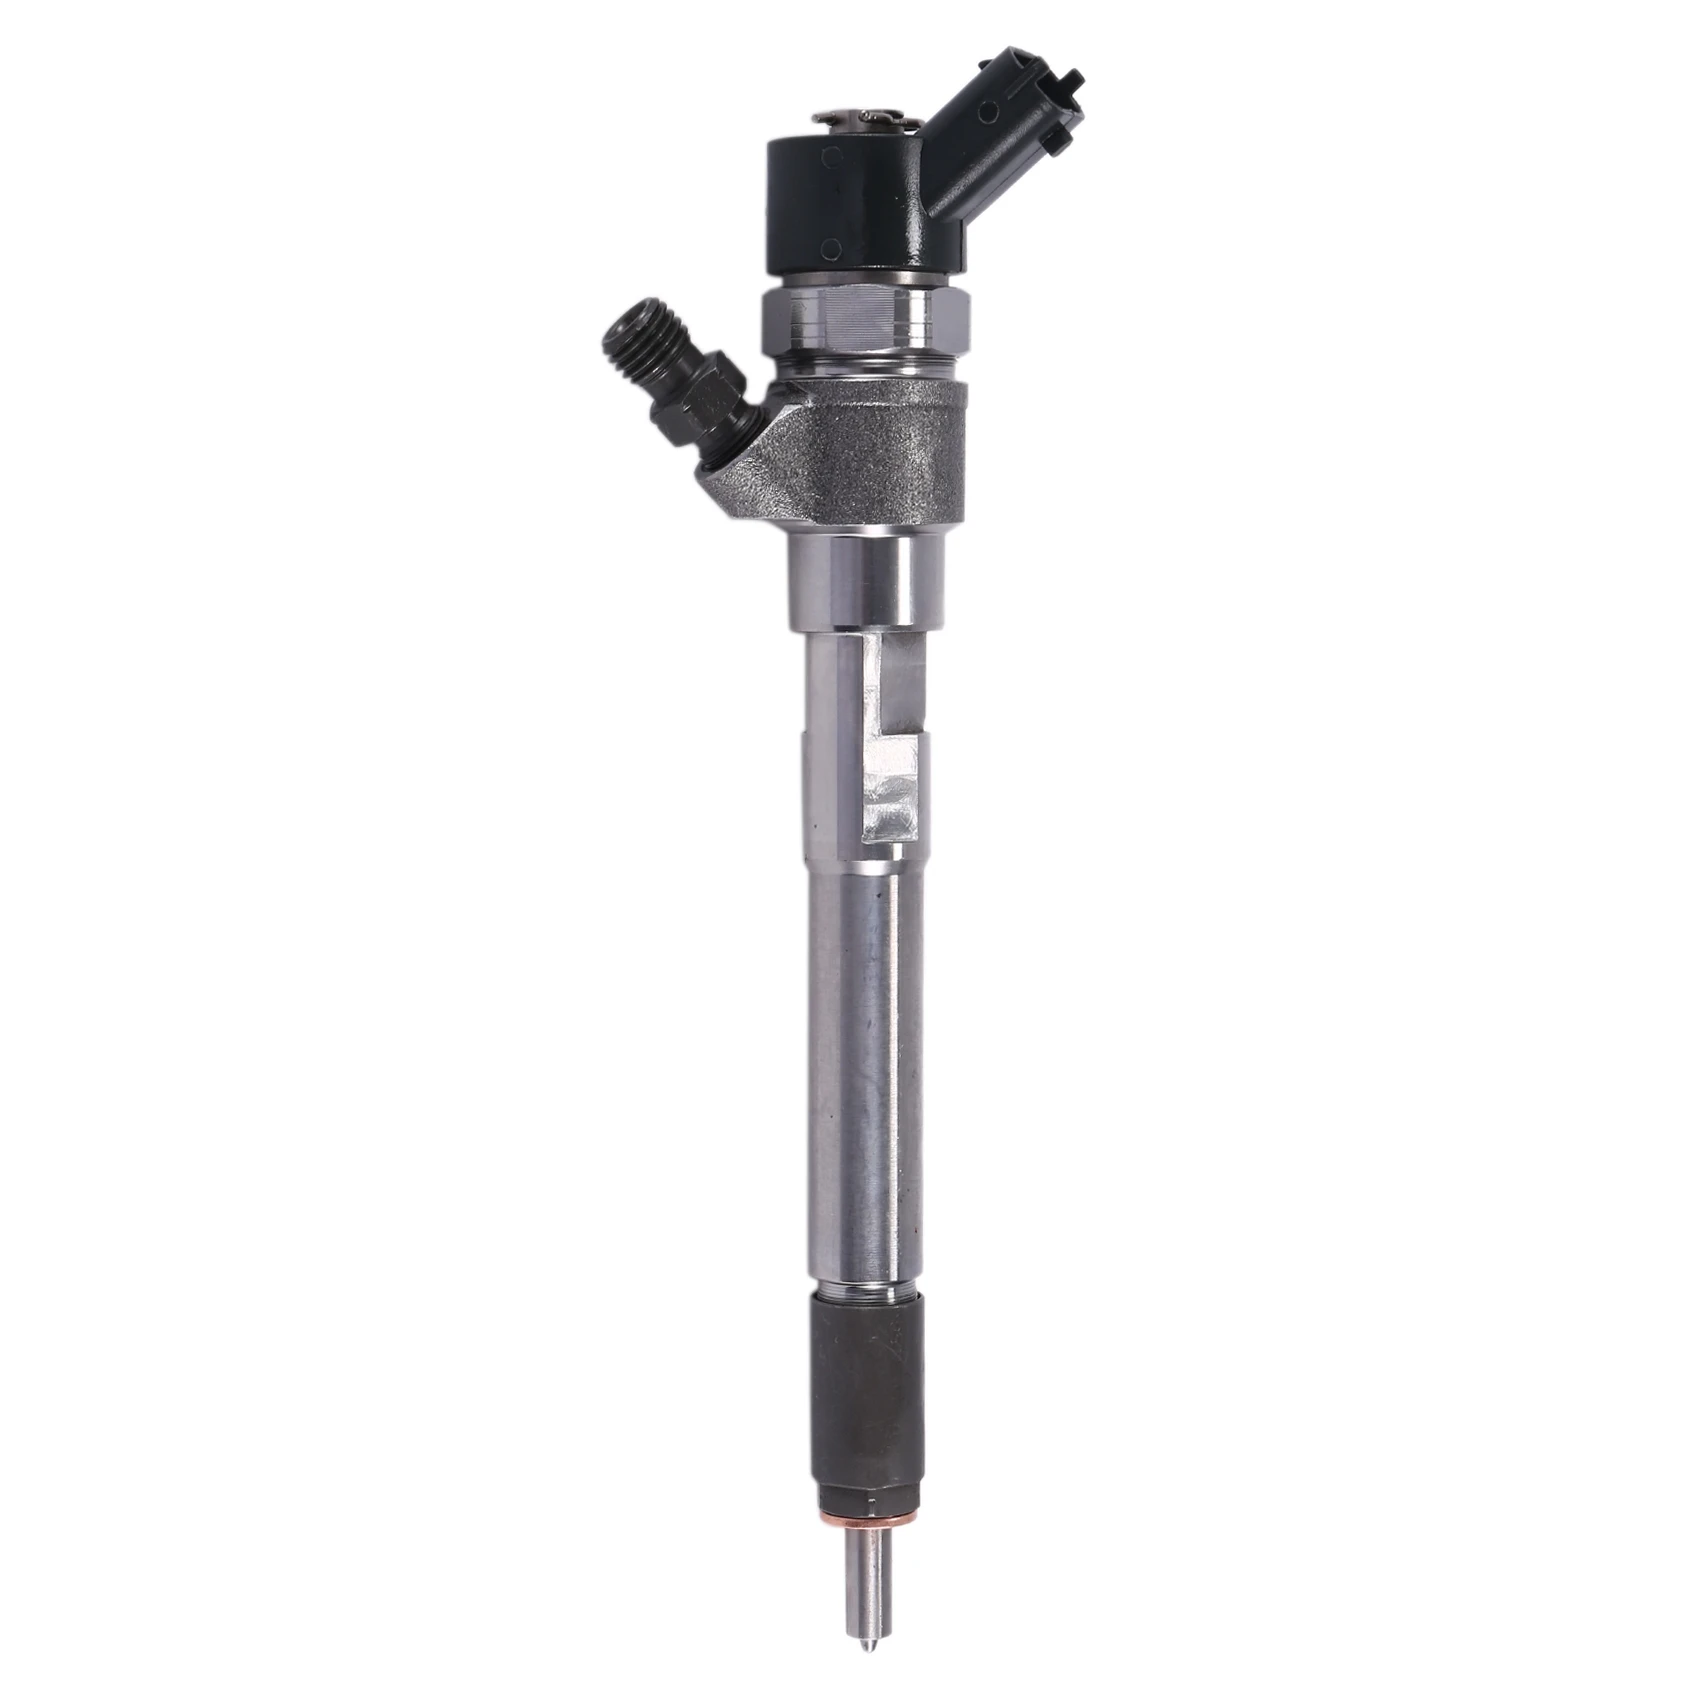 

New CRDI-Diesel Fuel Injector Nozzle 0445110254 , 0445110253, 33800-27800 for Hyundai Kia Santa Fe Grandeur VGT-EU4 2.2L